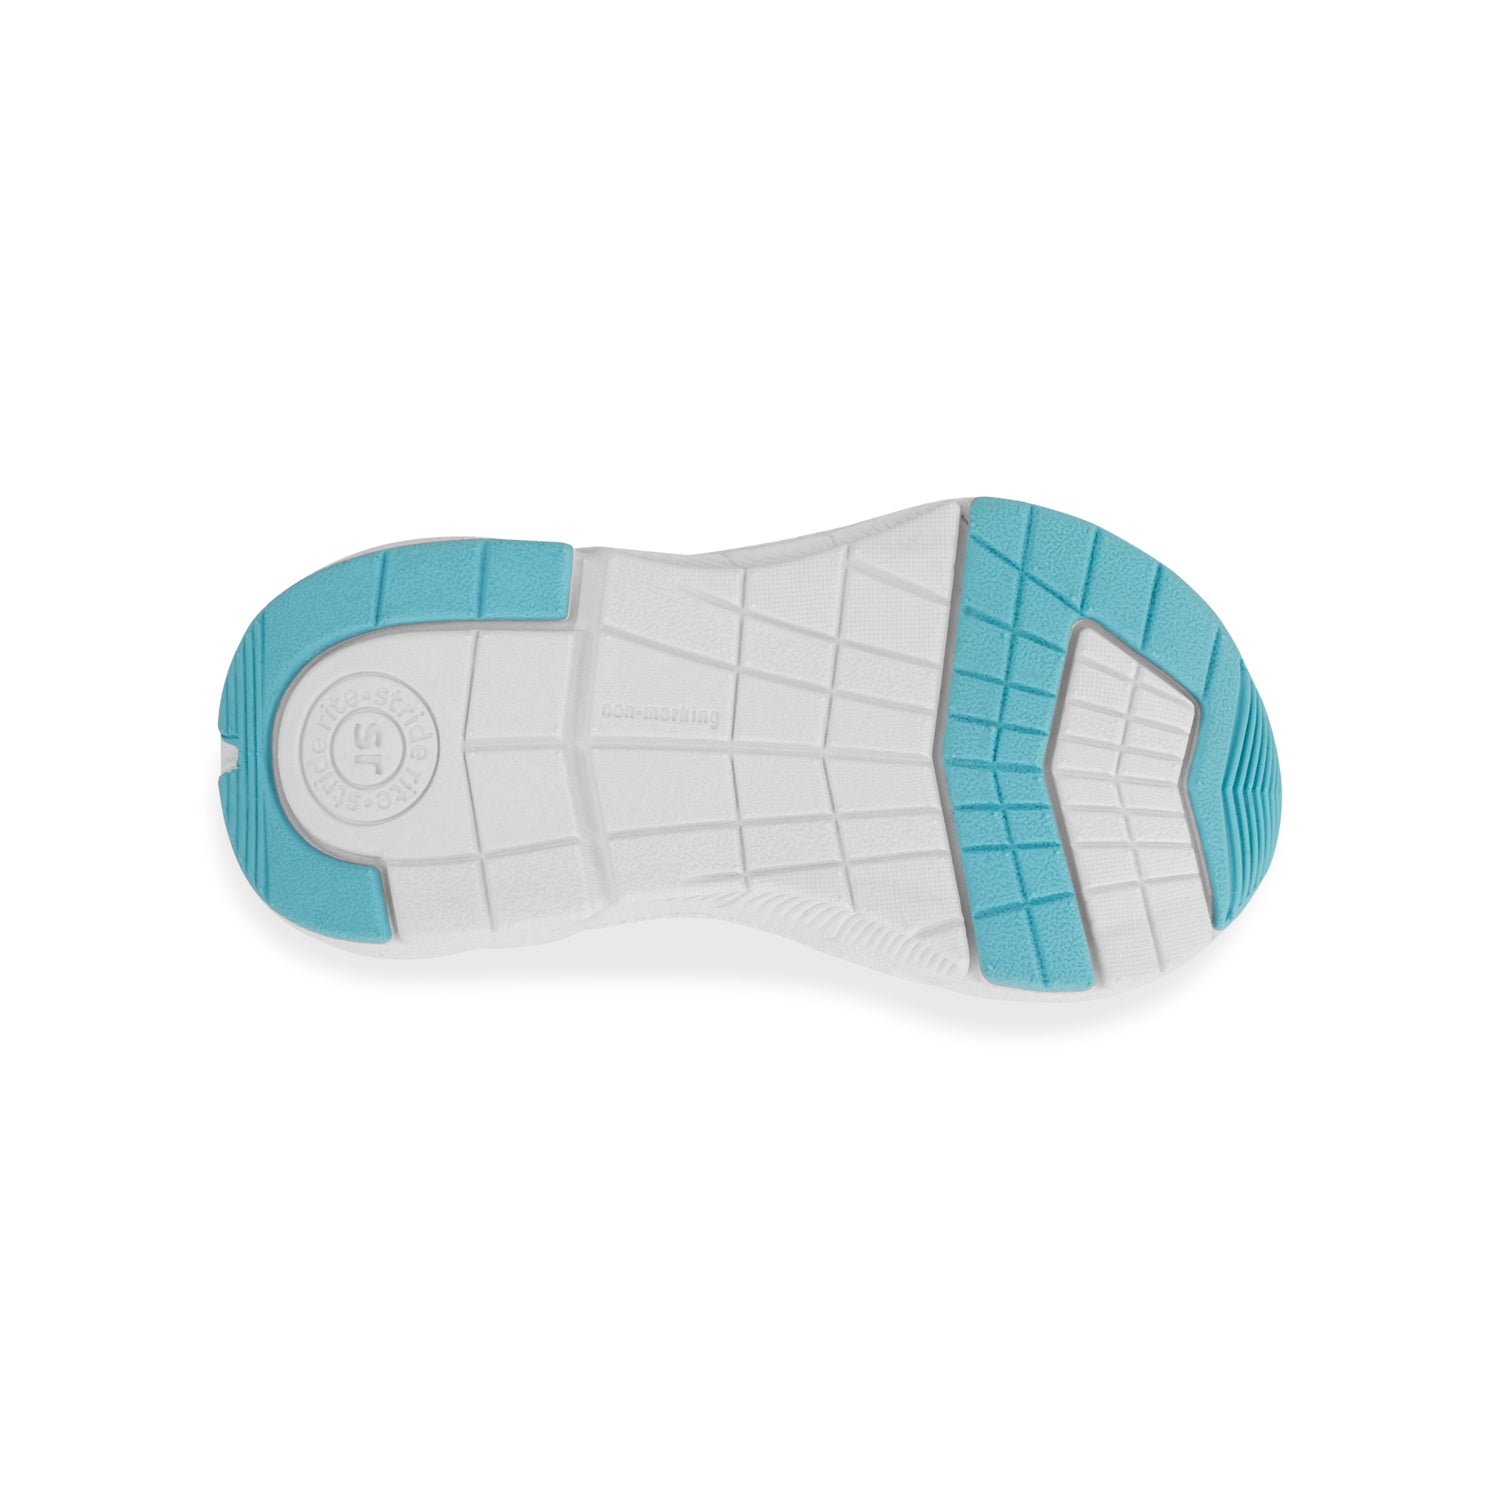 Journey 3.0-XW-Adaptable Sneaker